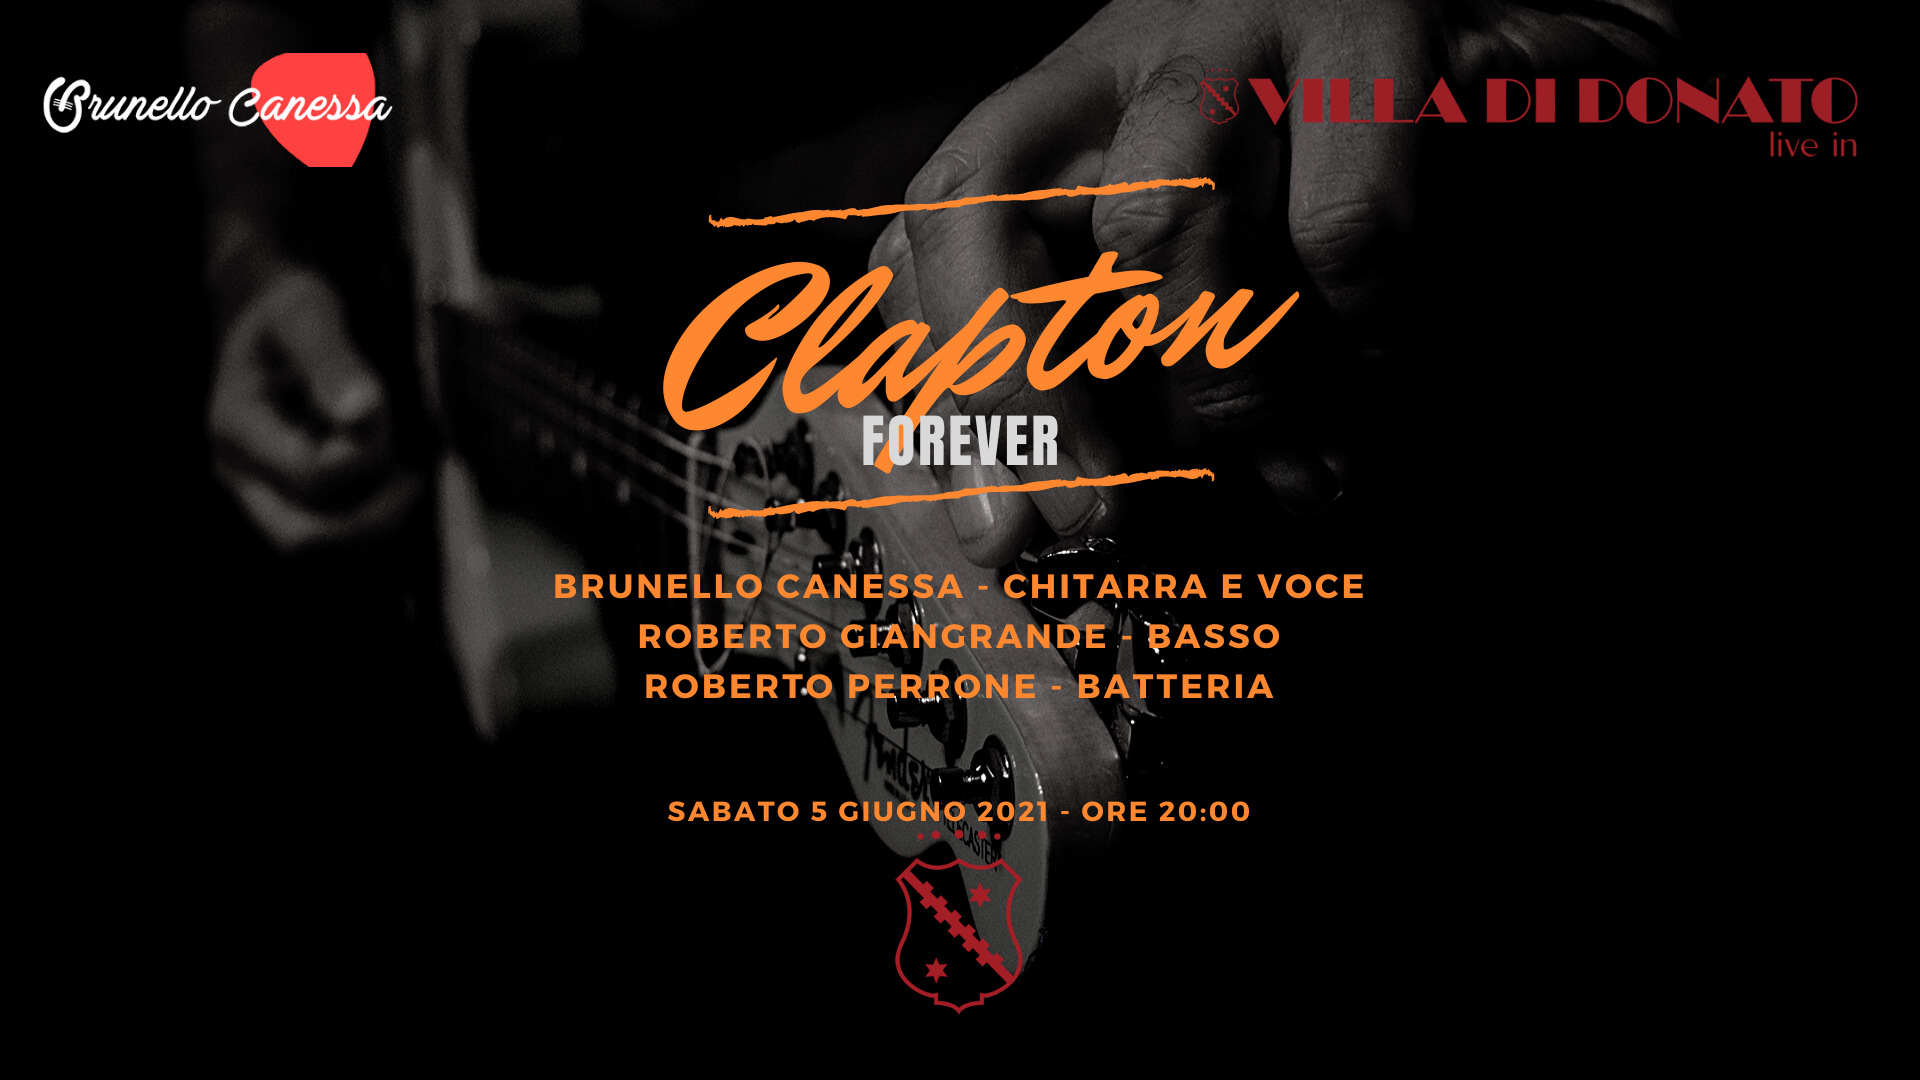 Villa di Donato presenta Clapton forever